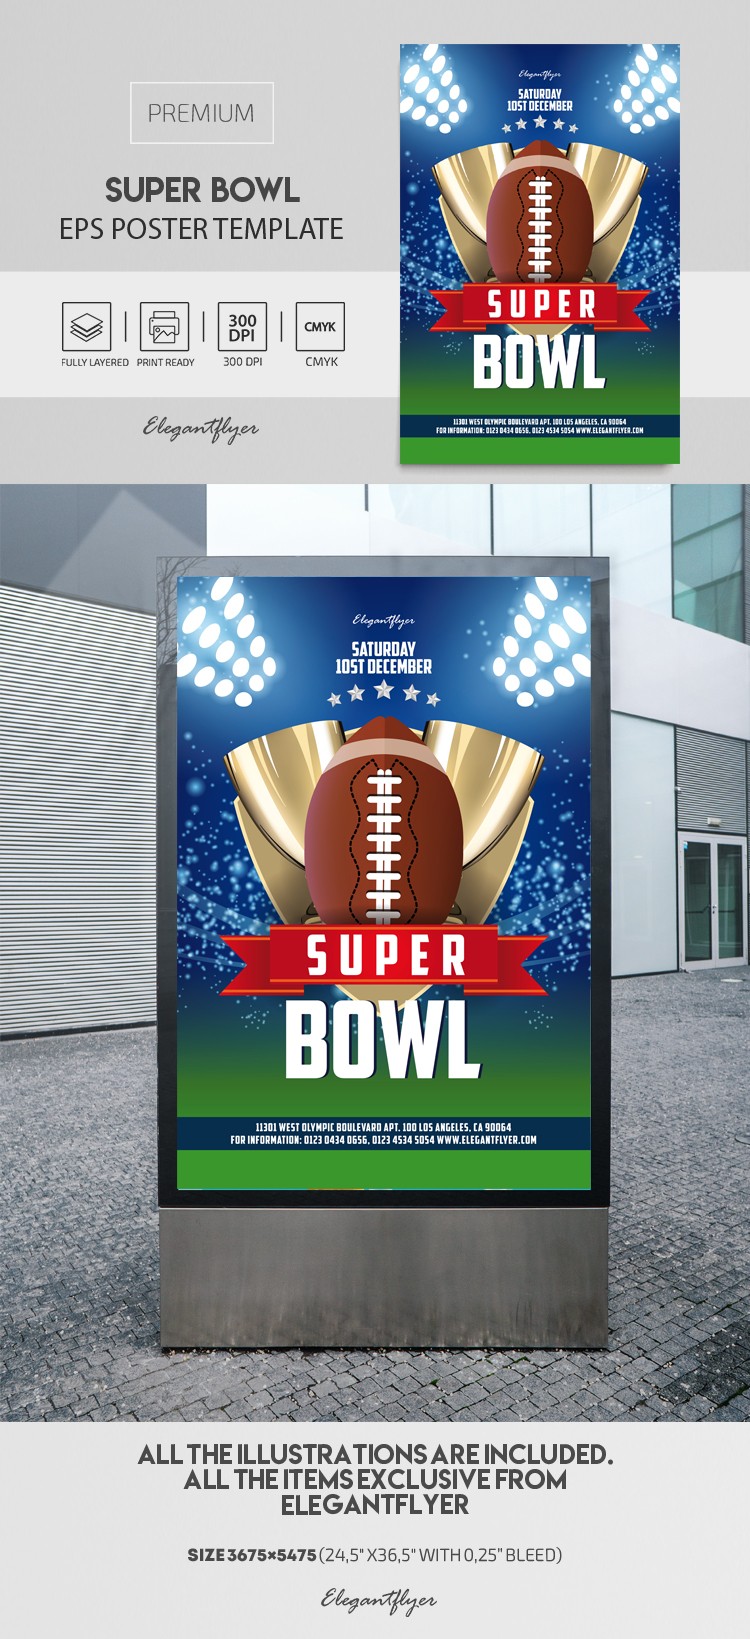 Super Bowl Affiche EPS by ElegantFlyer